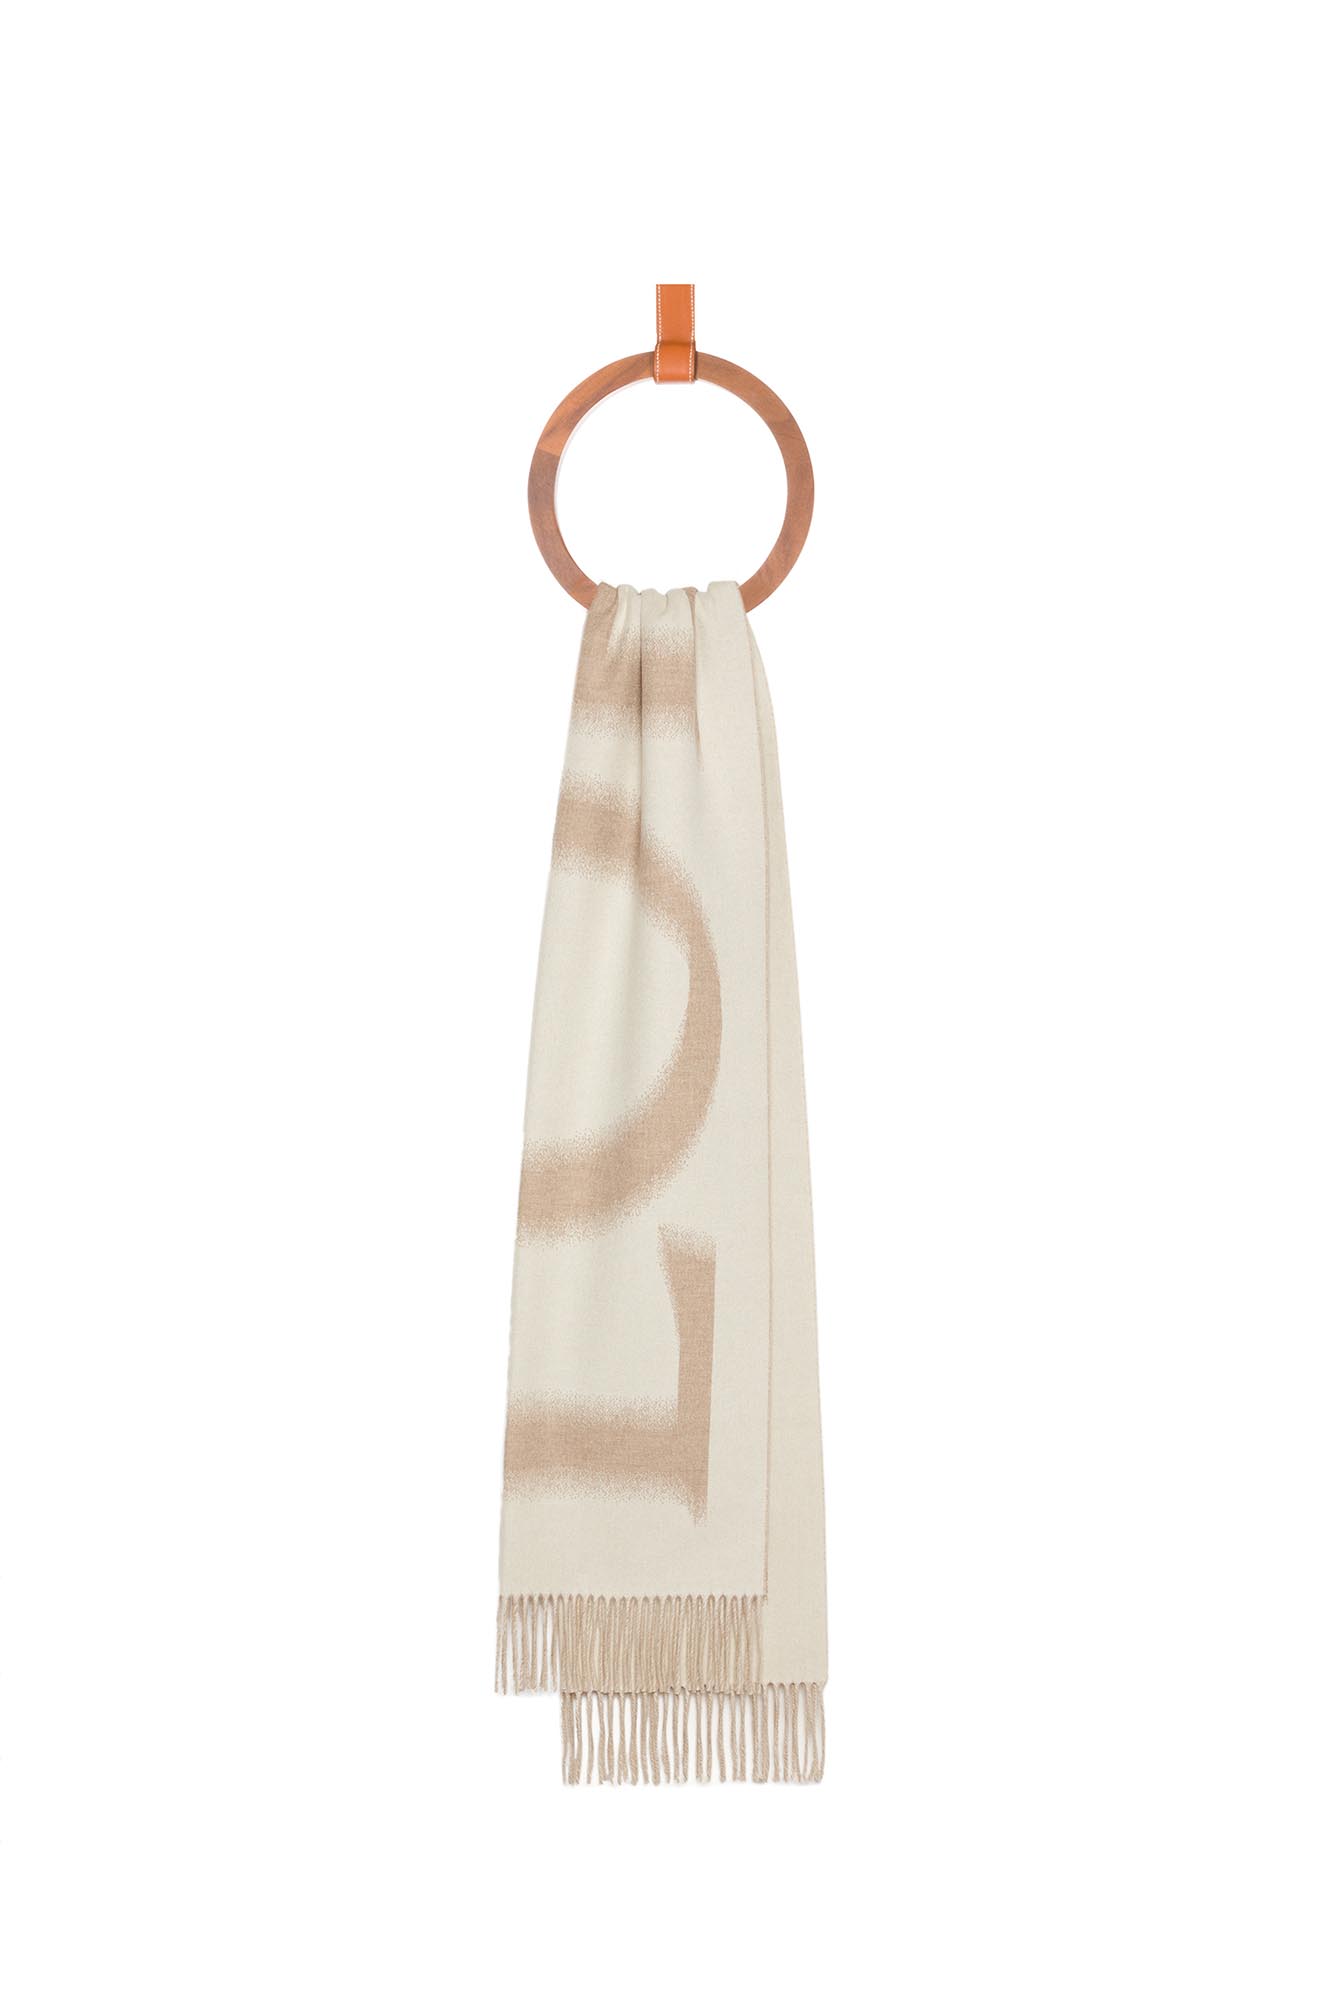 53x10-Blurred-Loewe-Scarf_0000_LOEWE-scarf-in-wool-and-cashmere-WHITE_BEIGE